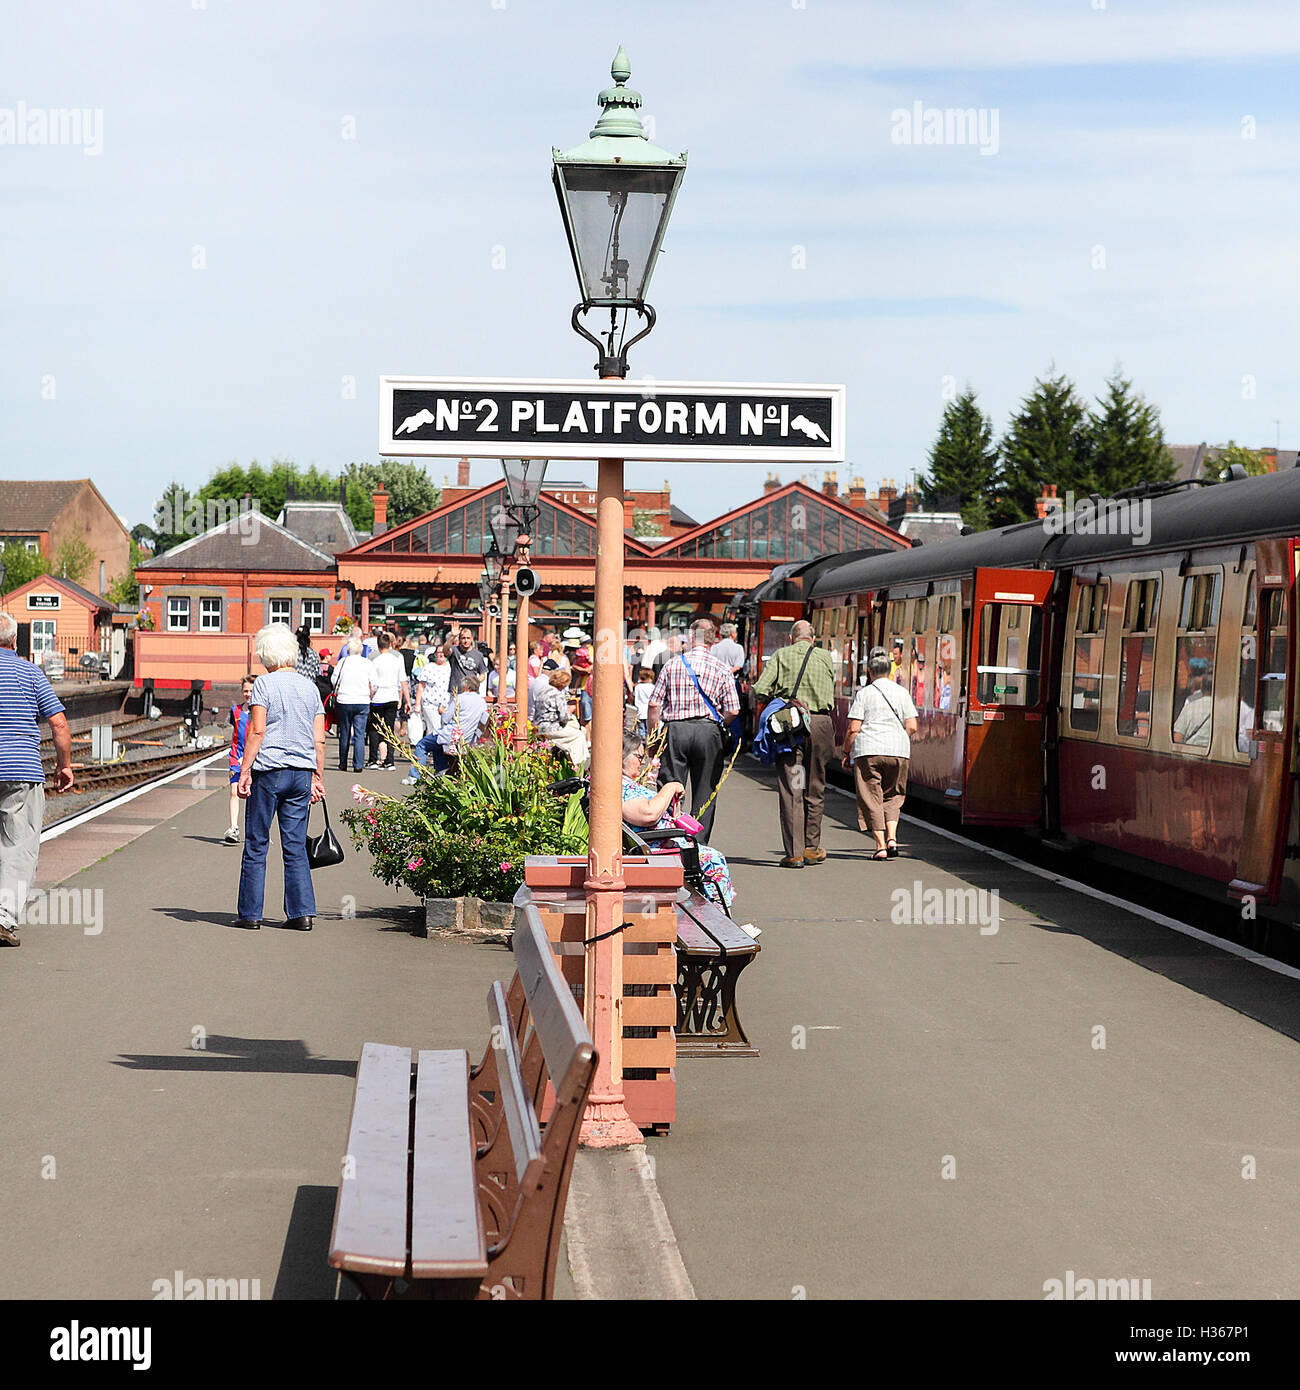 Kidderminster Town Station in Worcester, einem Ort des Museums, Einzelhandelsgeschäfte und britischen Eisenbahn Nostalgie. Stockfoto